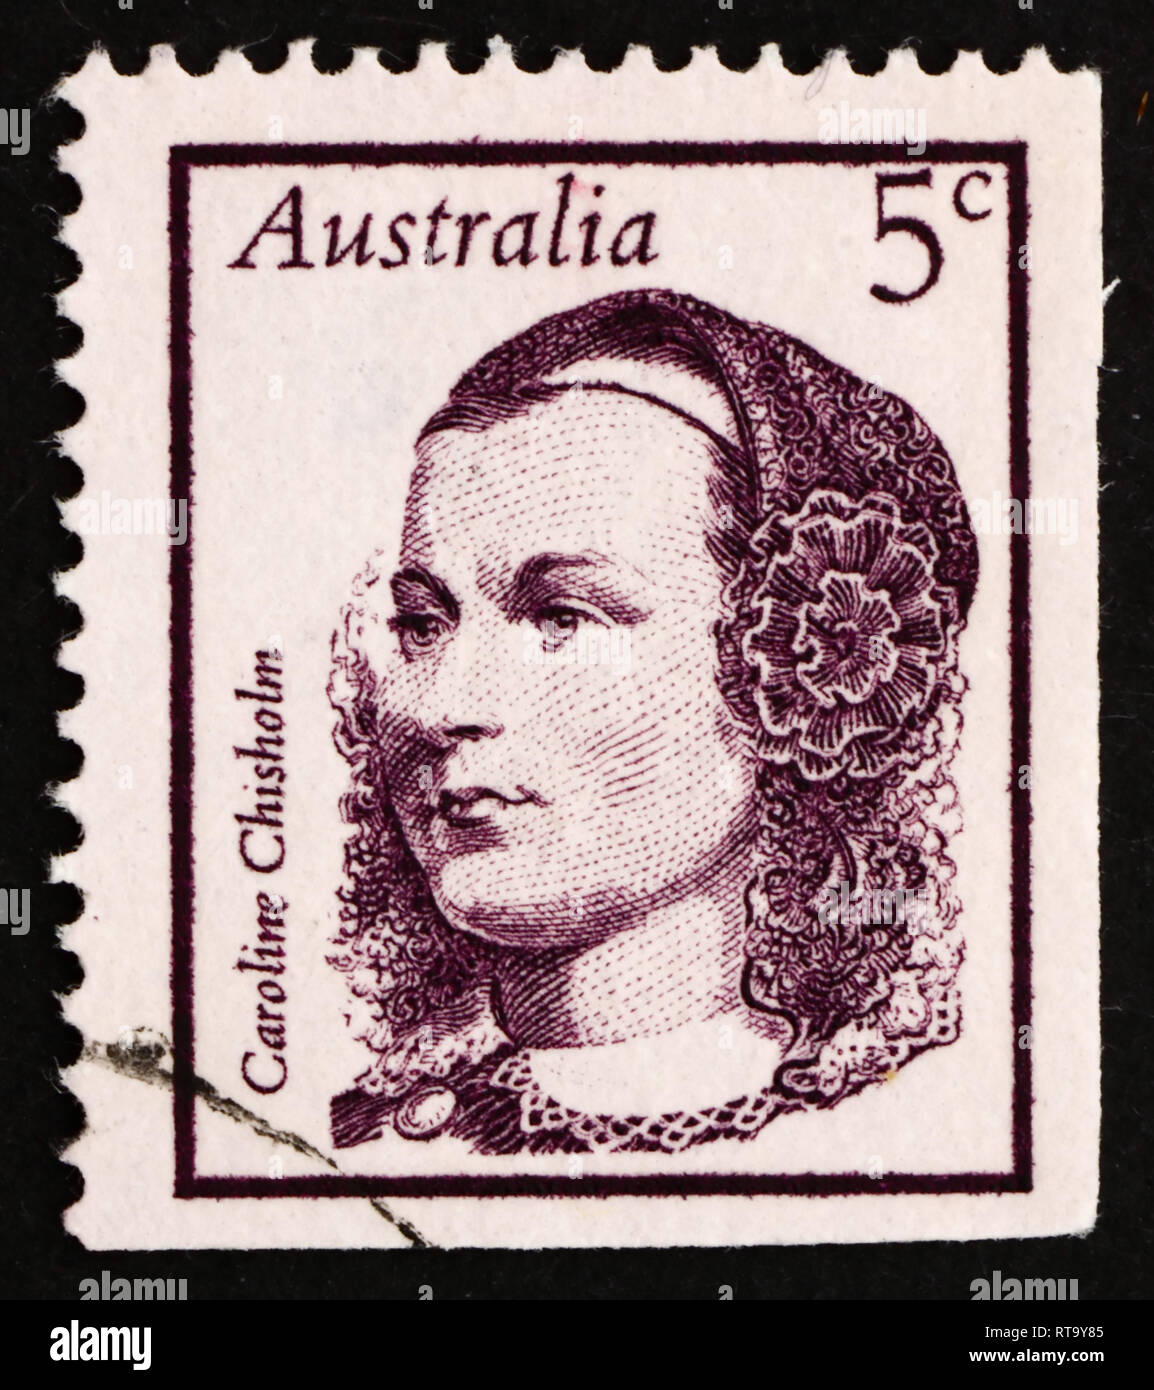 Australien - ca. 1968: einen Stempel in den Australien gedruckten zeigt Caroline Chisholm, Sozialarbeiter, Reformer, humanitären, berühmten Australier, ca. 196 Stockfoto